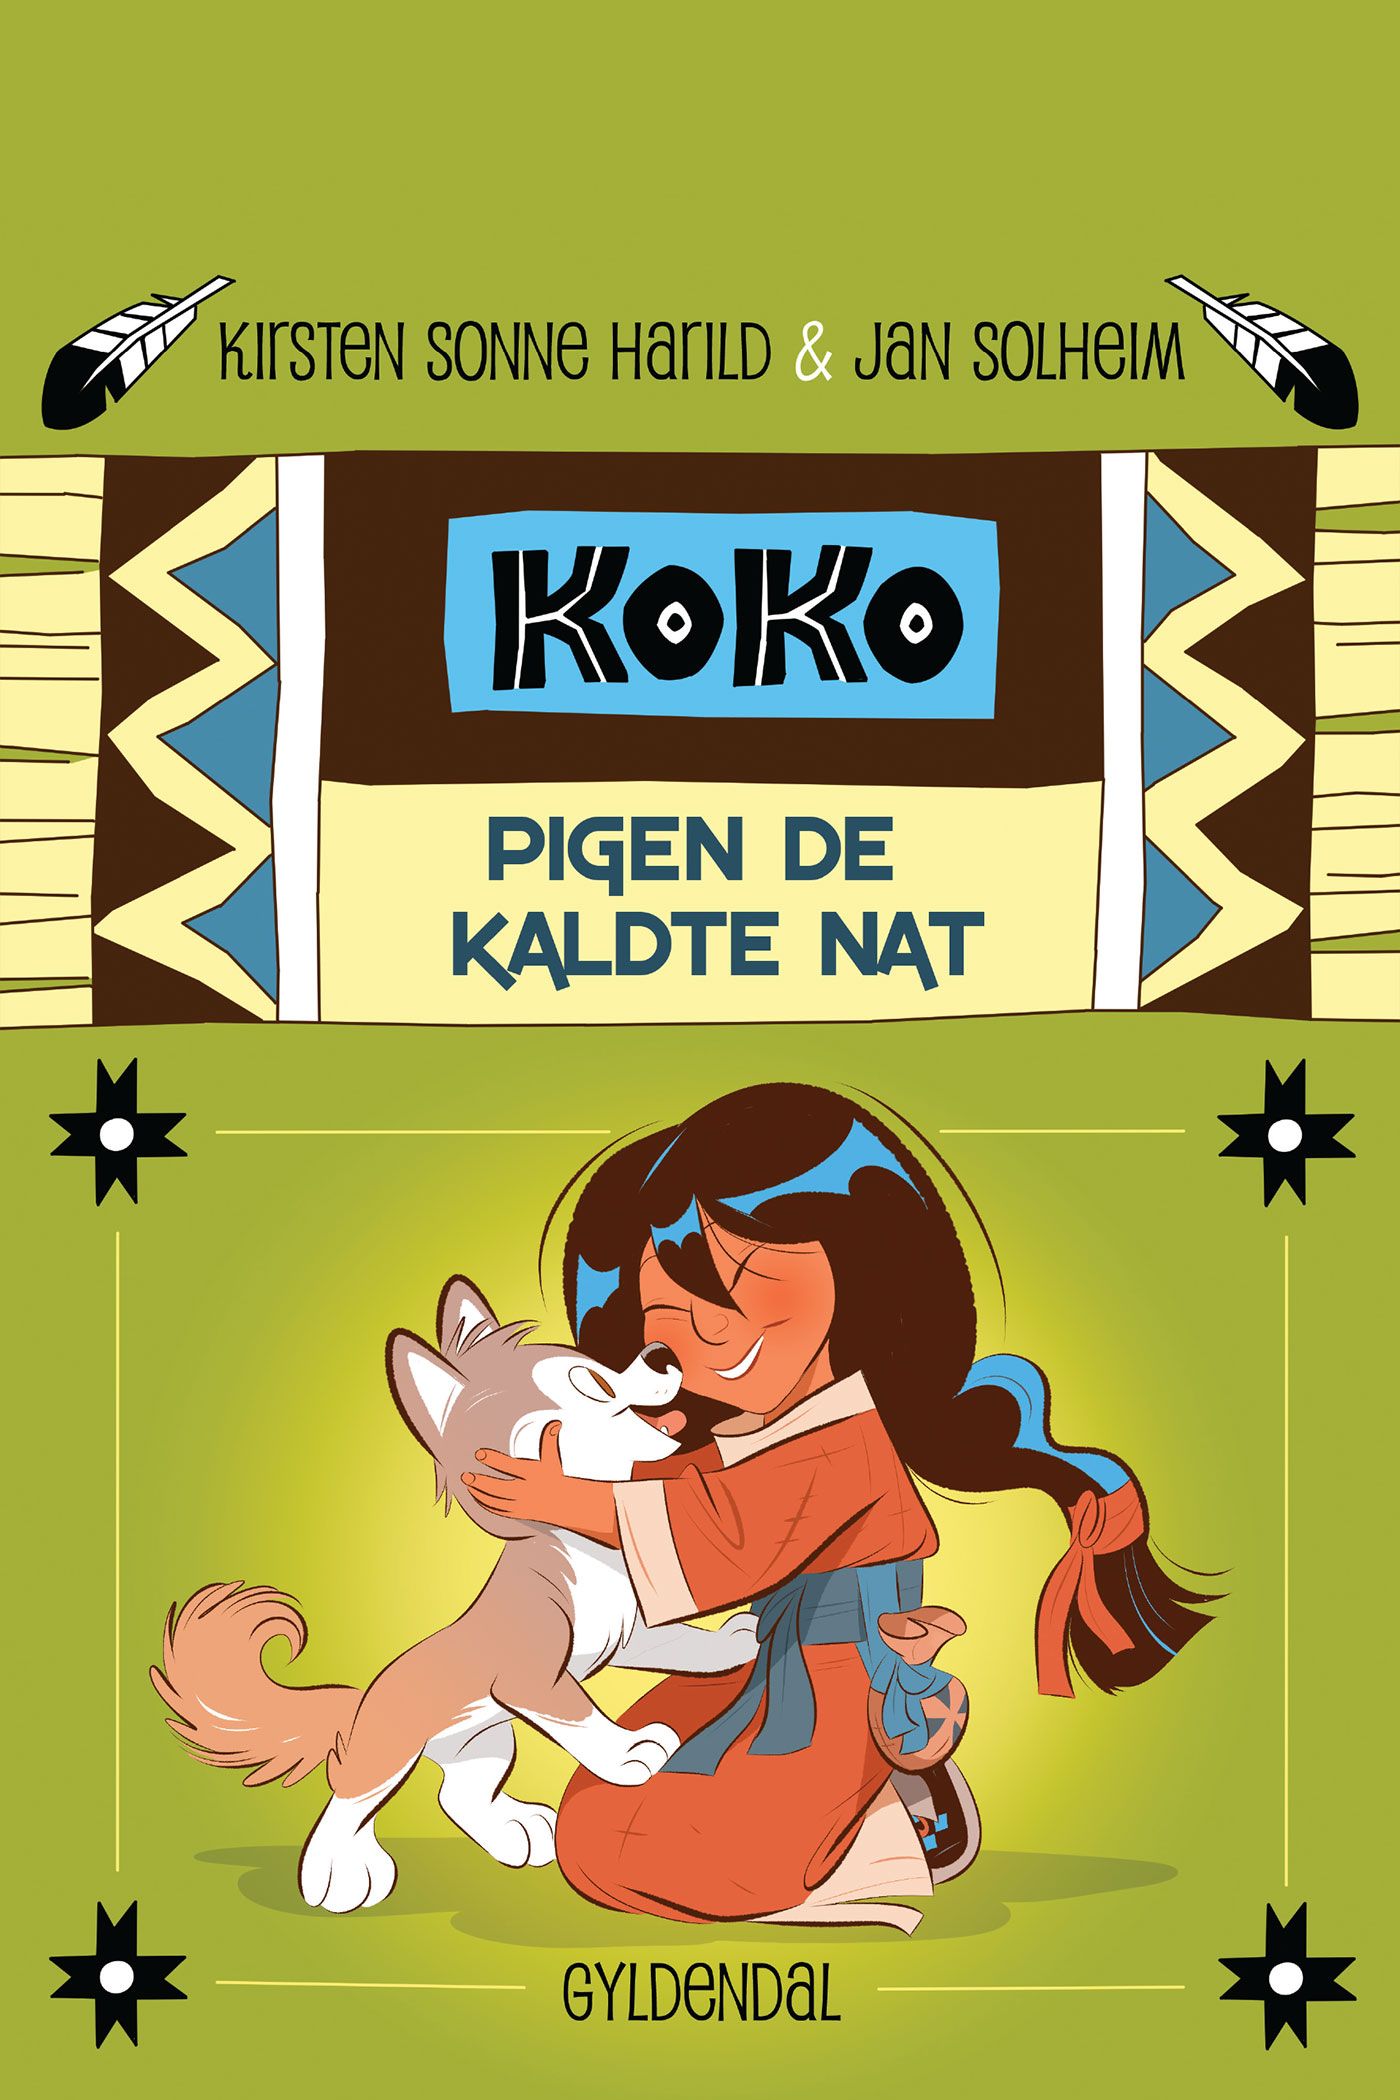 Koko 1 - Pigen de kaldte nat, e-bog af Kirsten Sonne Harild